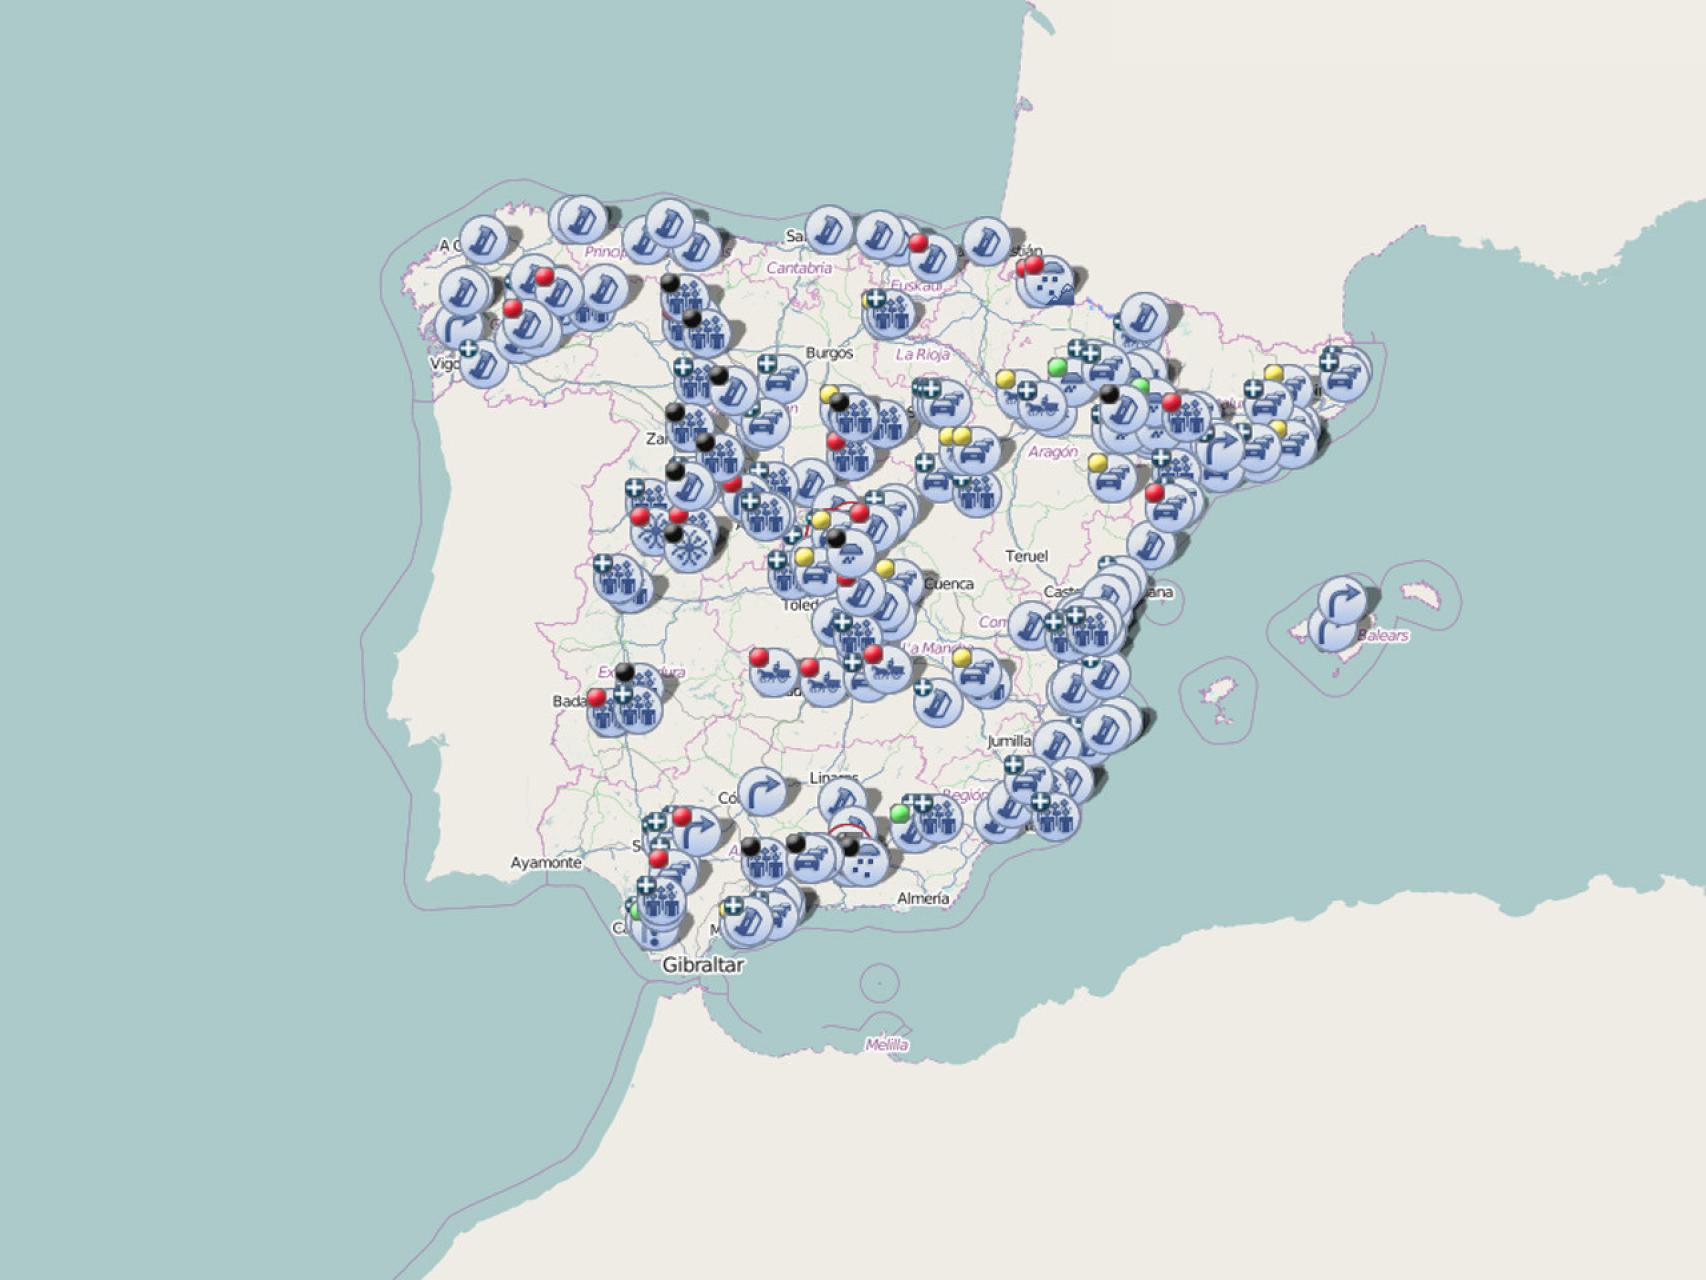 TRACTORADA EN ESPAÑA  Retenciones agrícolas: con este mapa de la DGT  puedes consultar dónde están todas